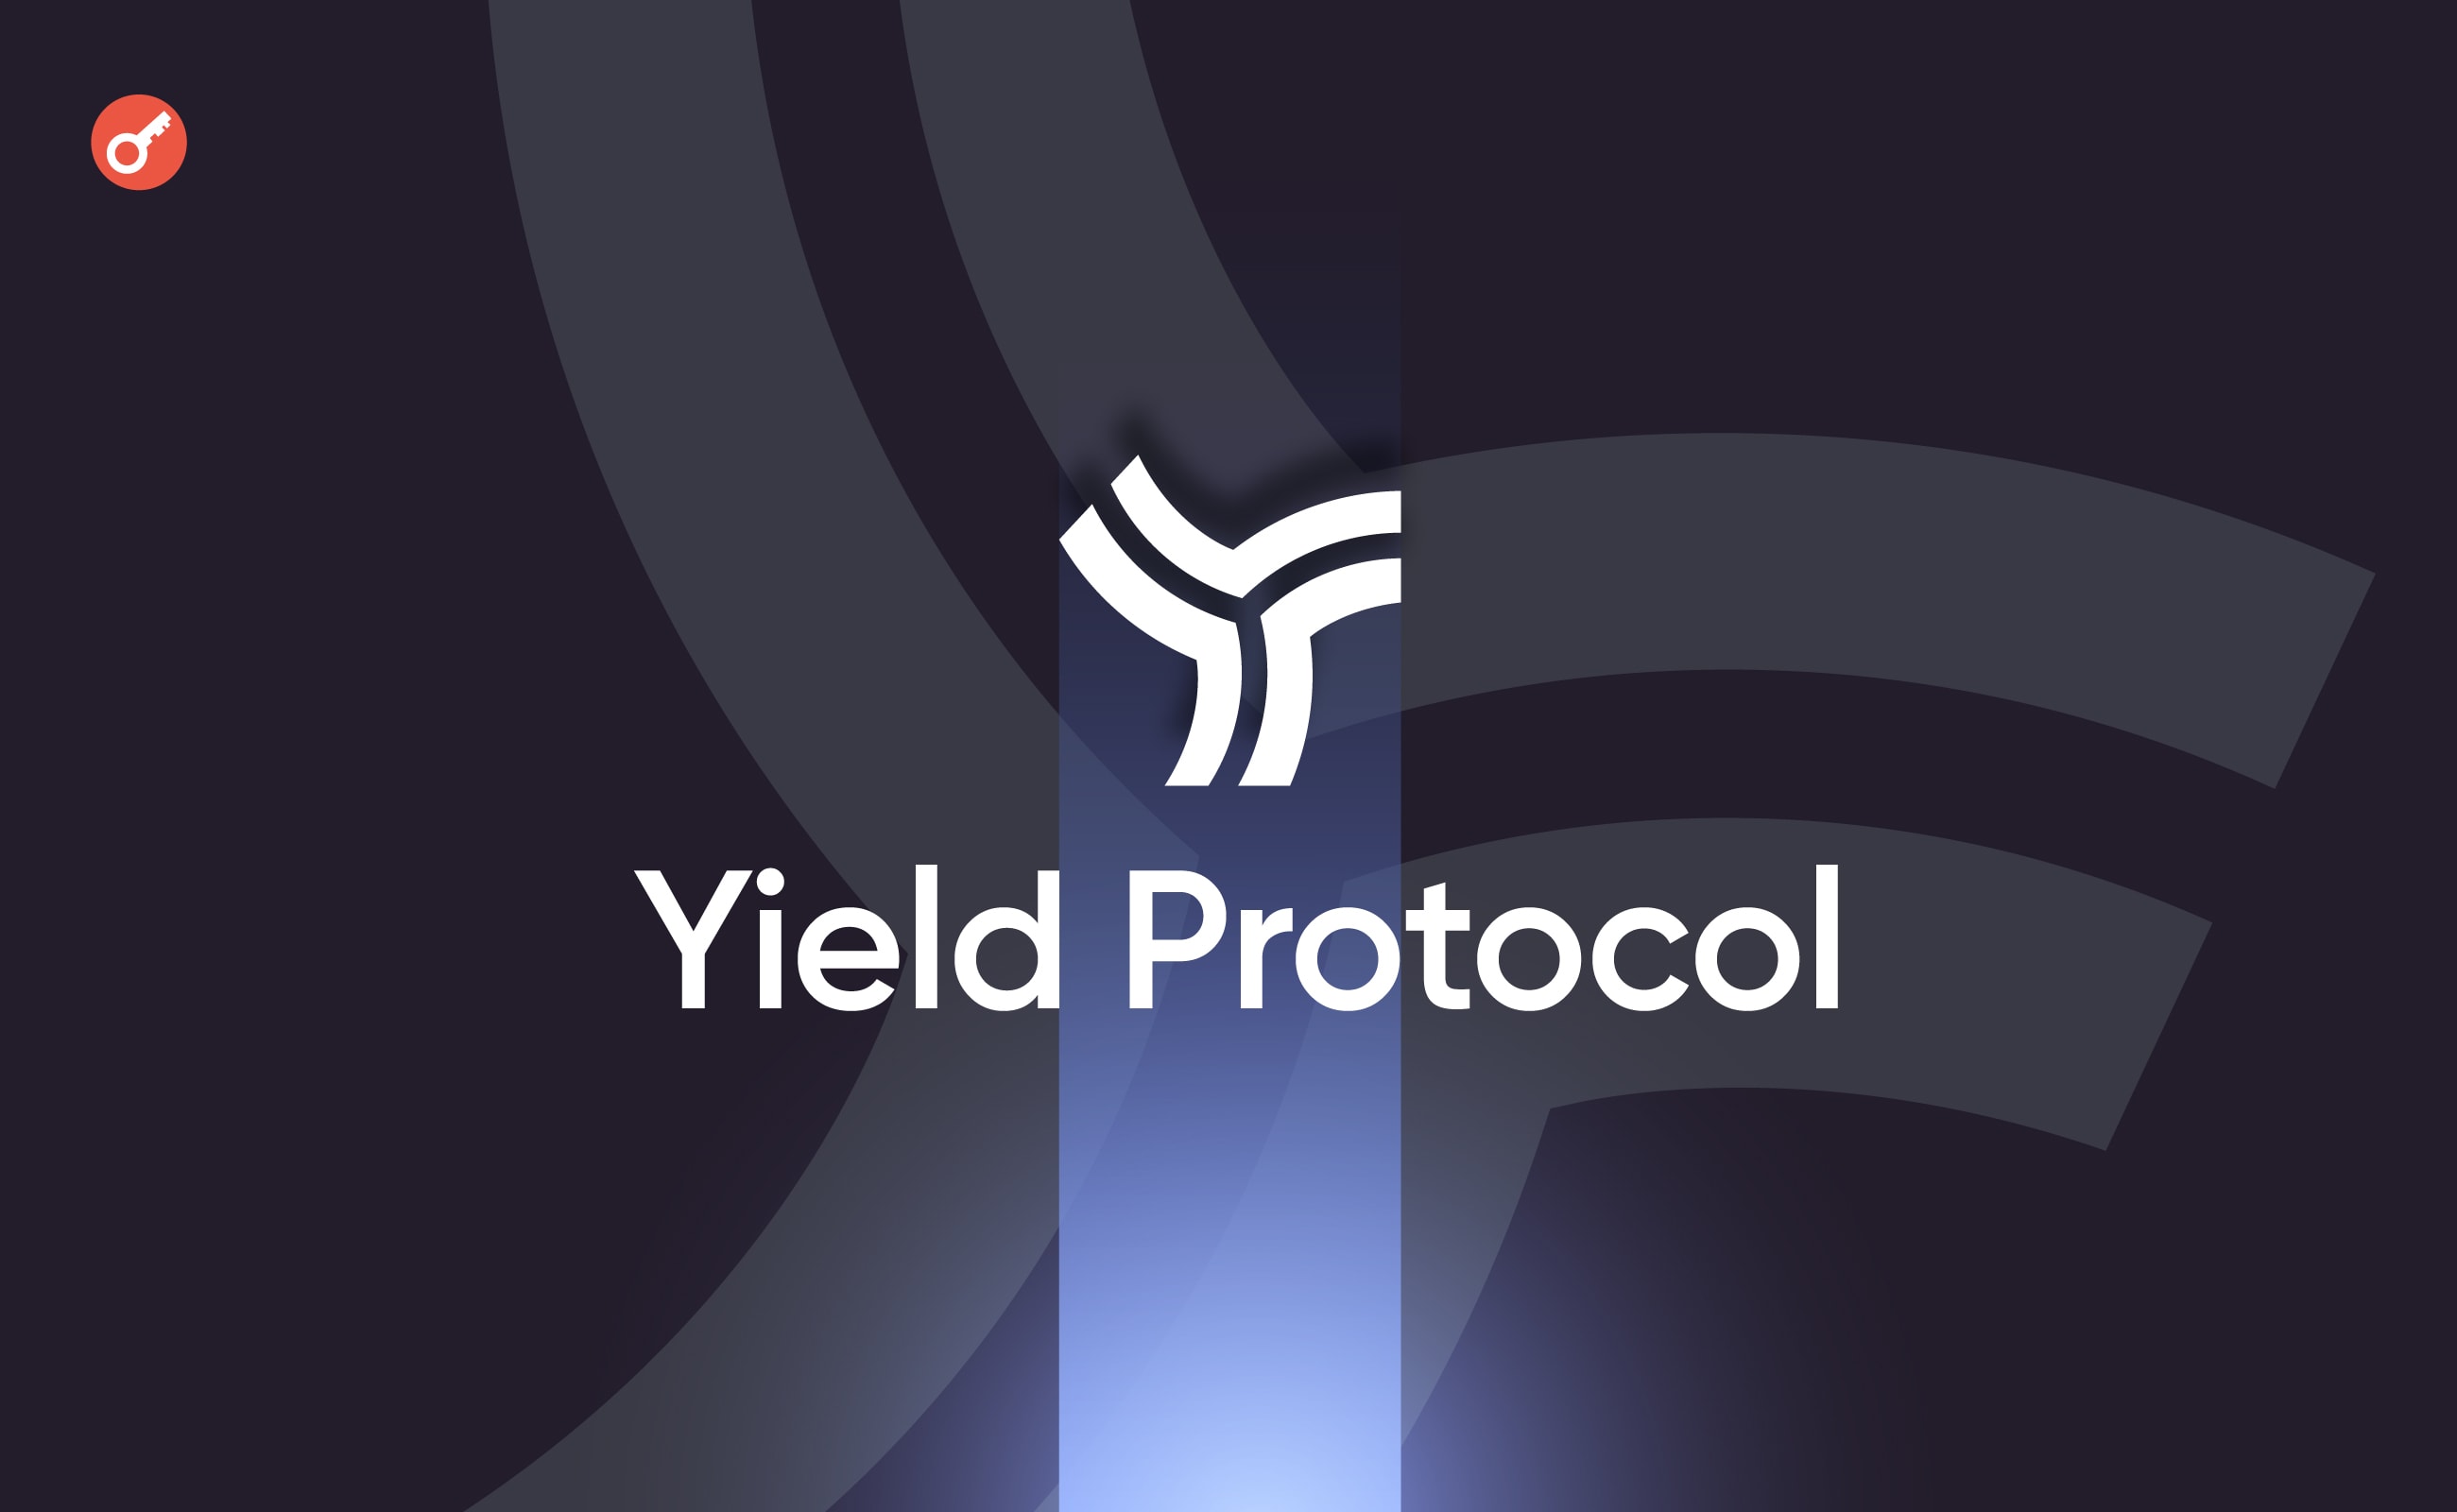 Projekt Yield Protocol zakończy działalność do końca 2023 r. Główny kolaż wiadomości.